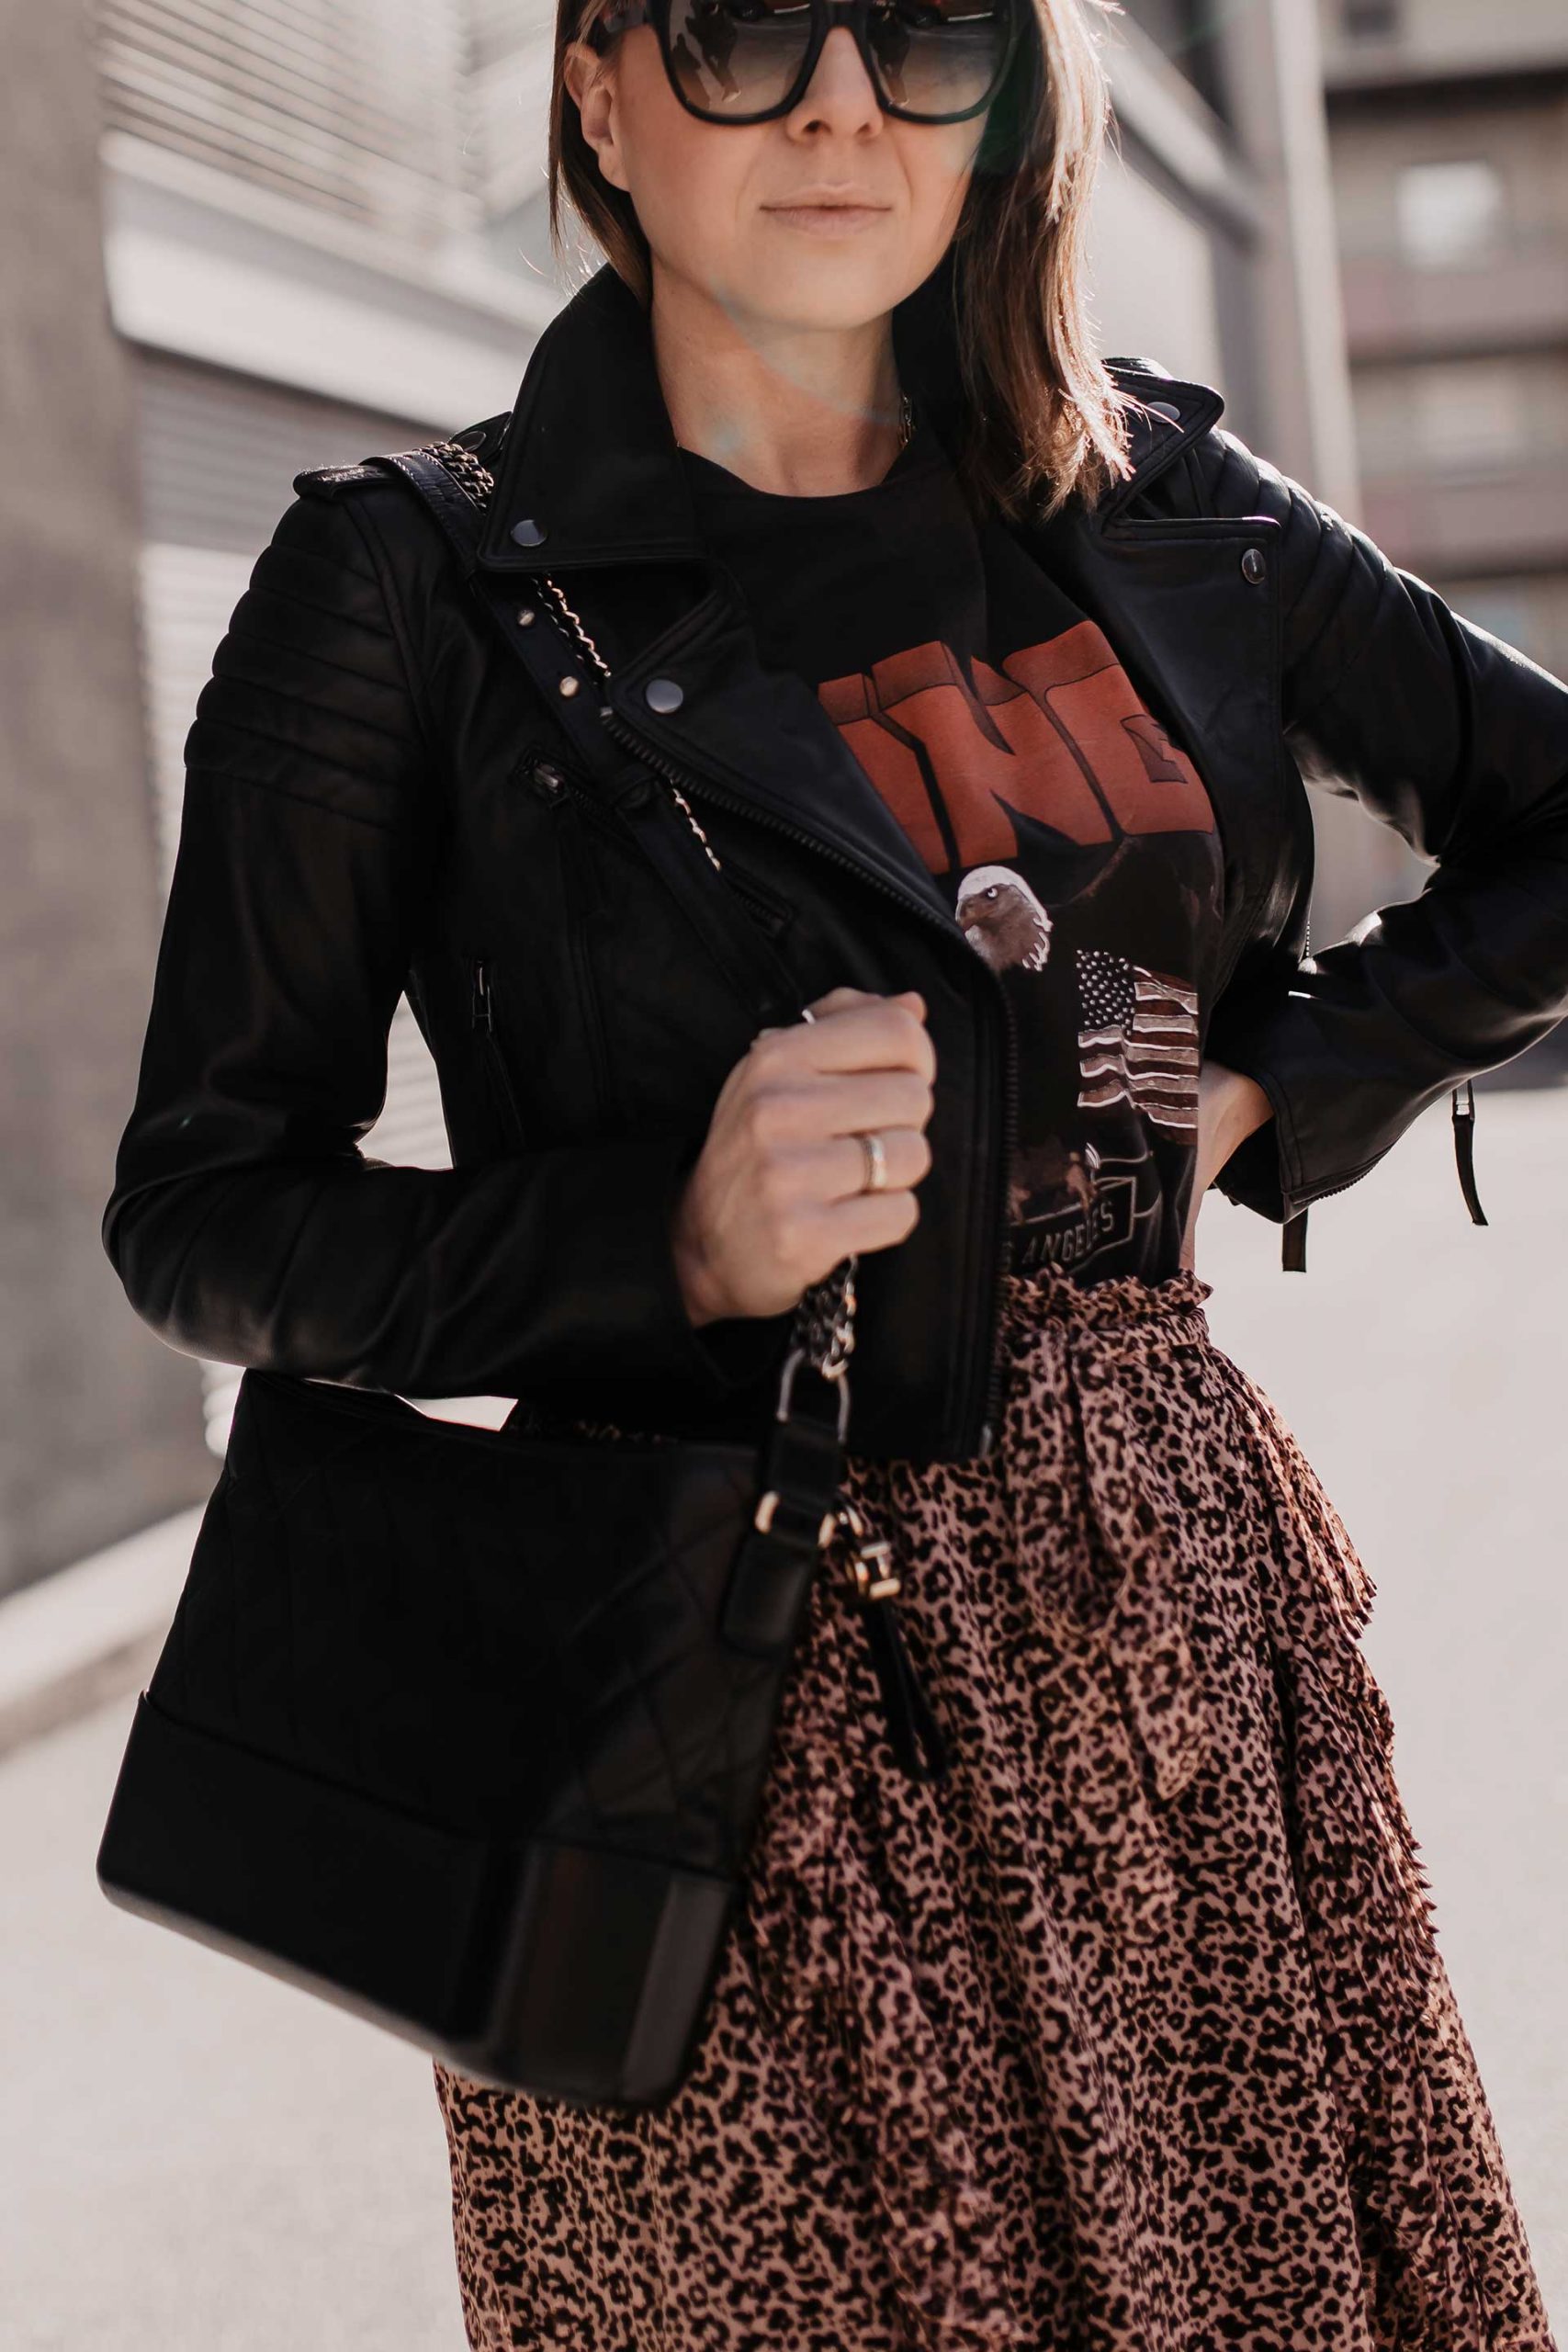 Am Modeblog findest du heute ein rockiges Outfit für den Alltag mit Anine Bing Shirt und Lederjacke. Außerdem verrate ich dir 4 Tipps und Grundlagen, damit du ein schönes rockiges Outfit kombinieren kannst. www.whoismocca.com #outfitidee #leorock #lederjacke #frühlingsoutfit